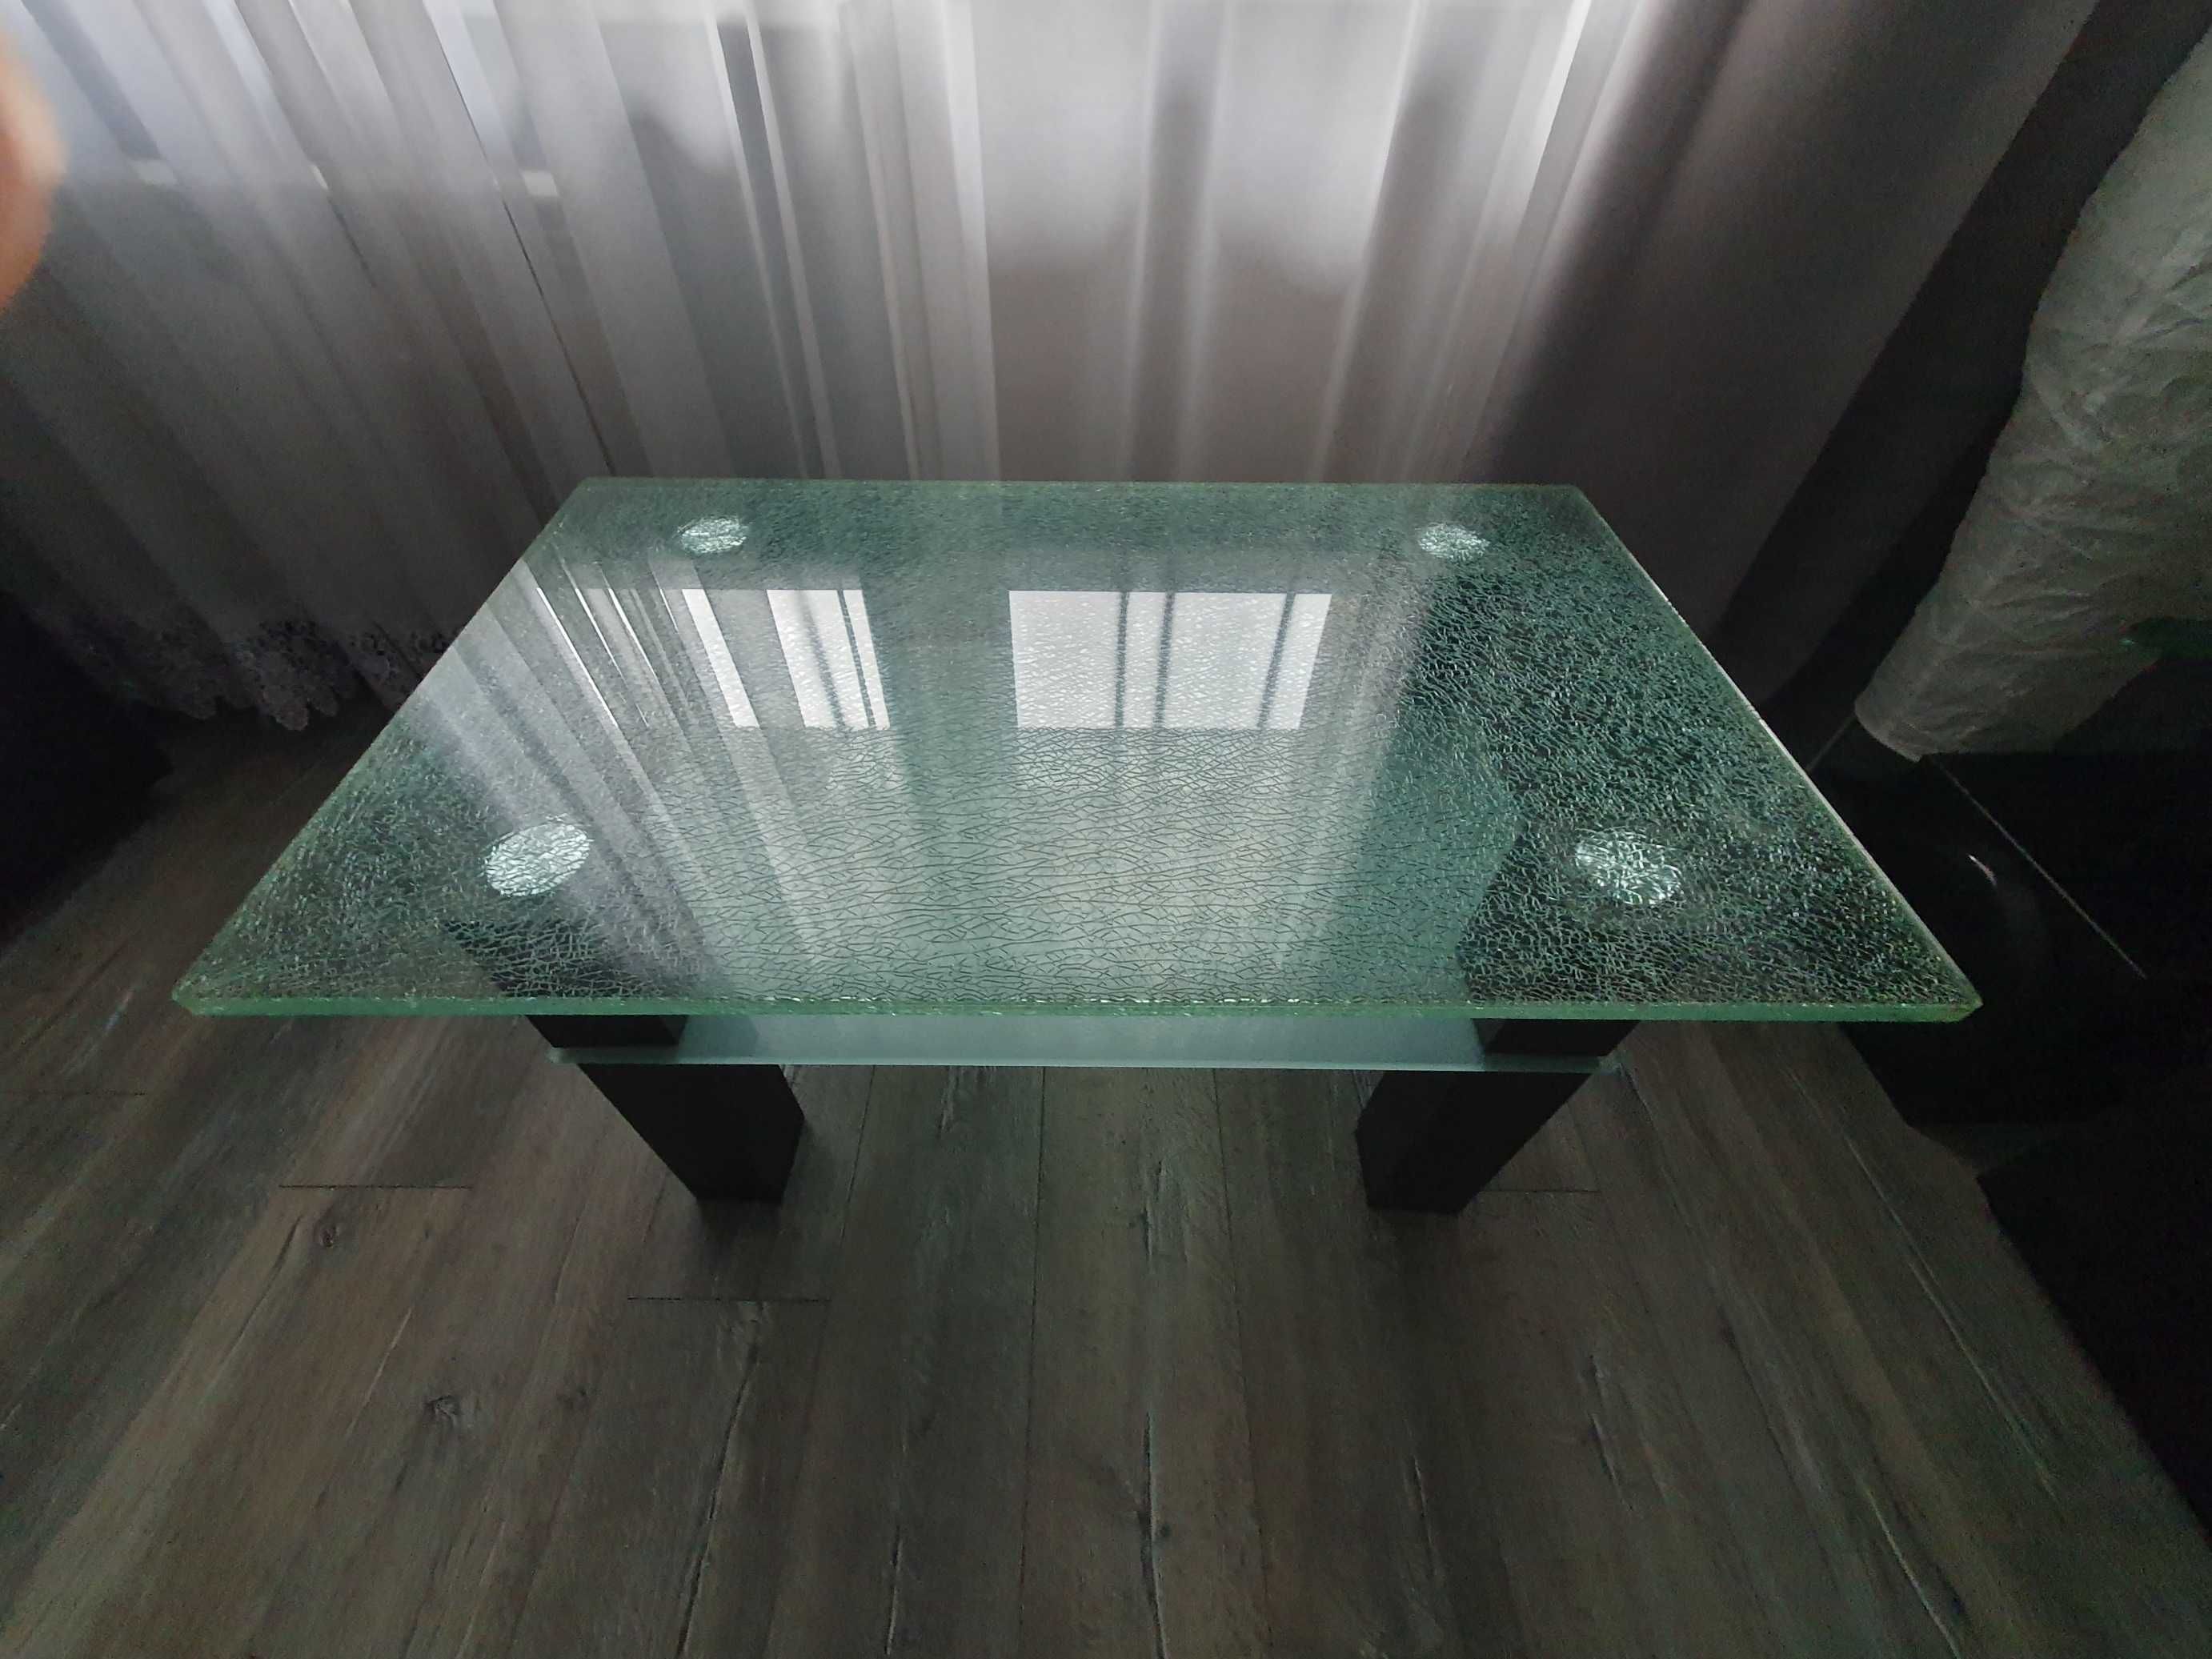 Używana stolik z efektem tluczonego szkla